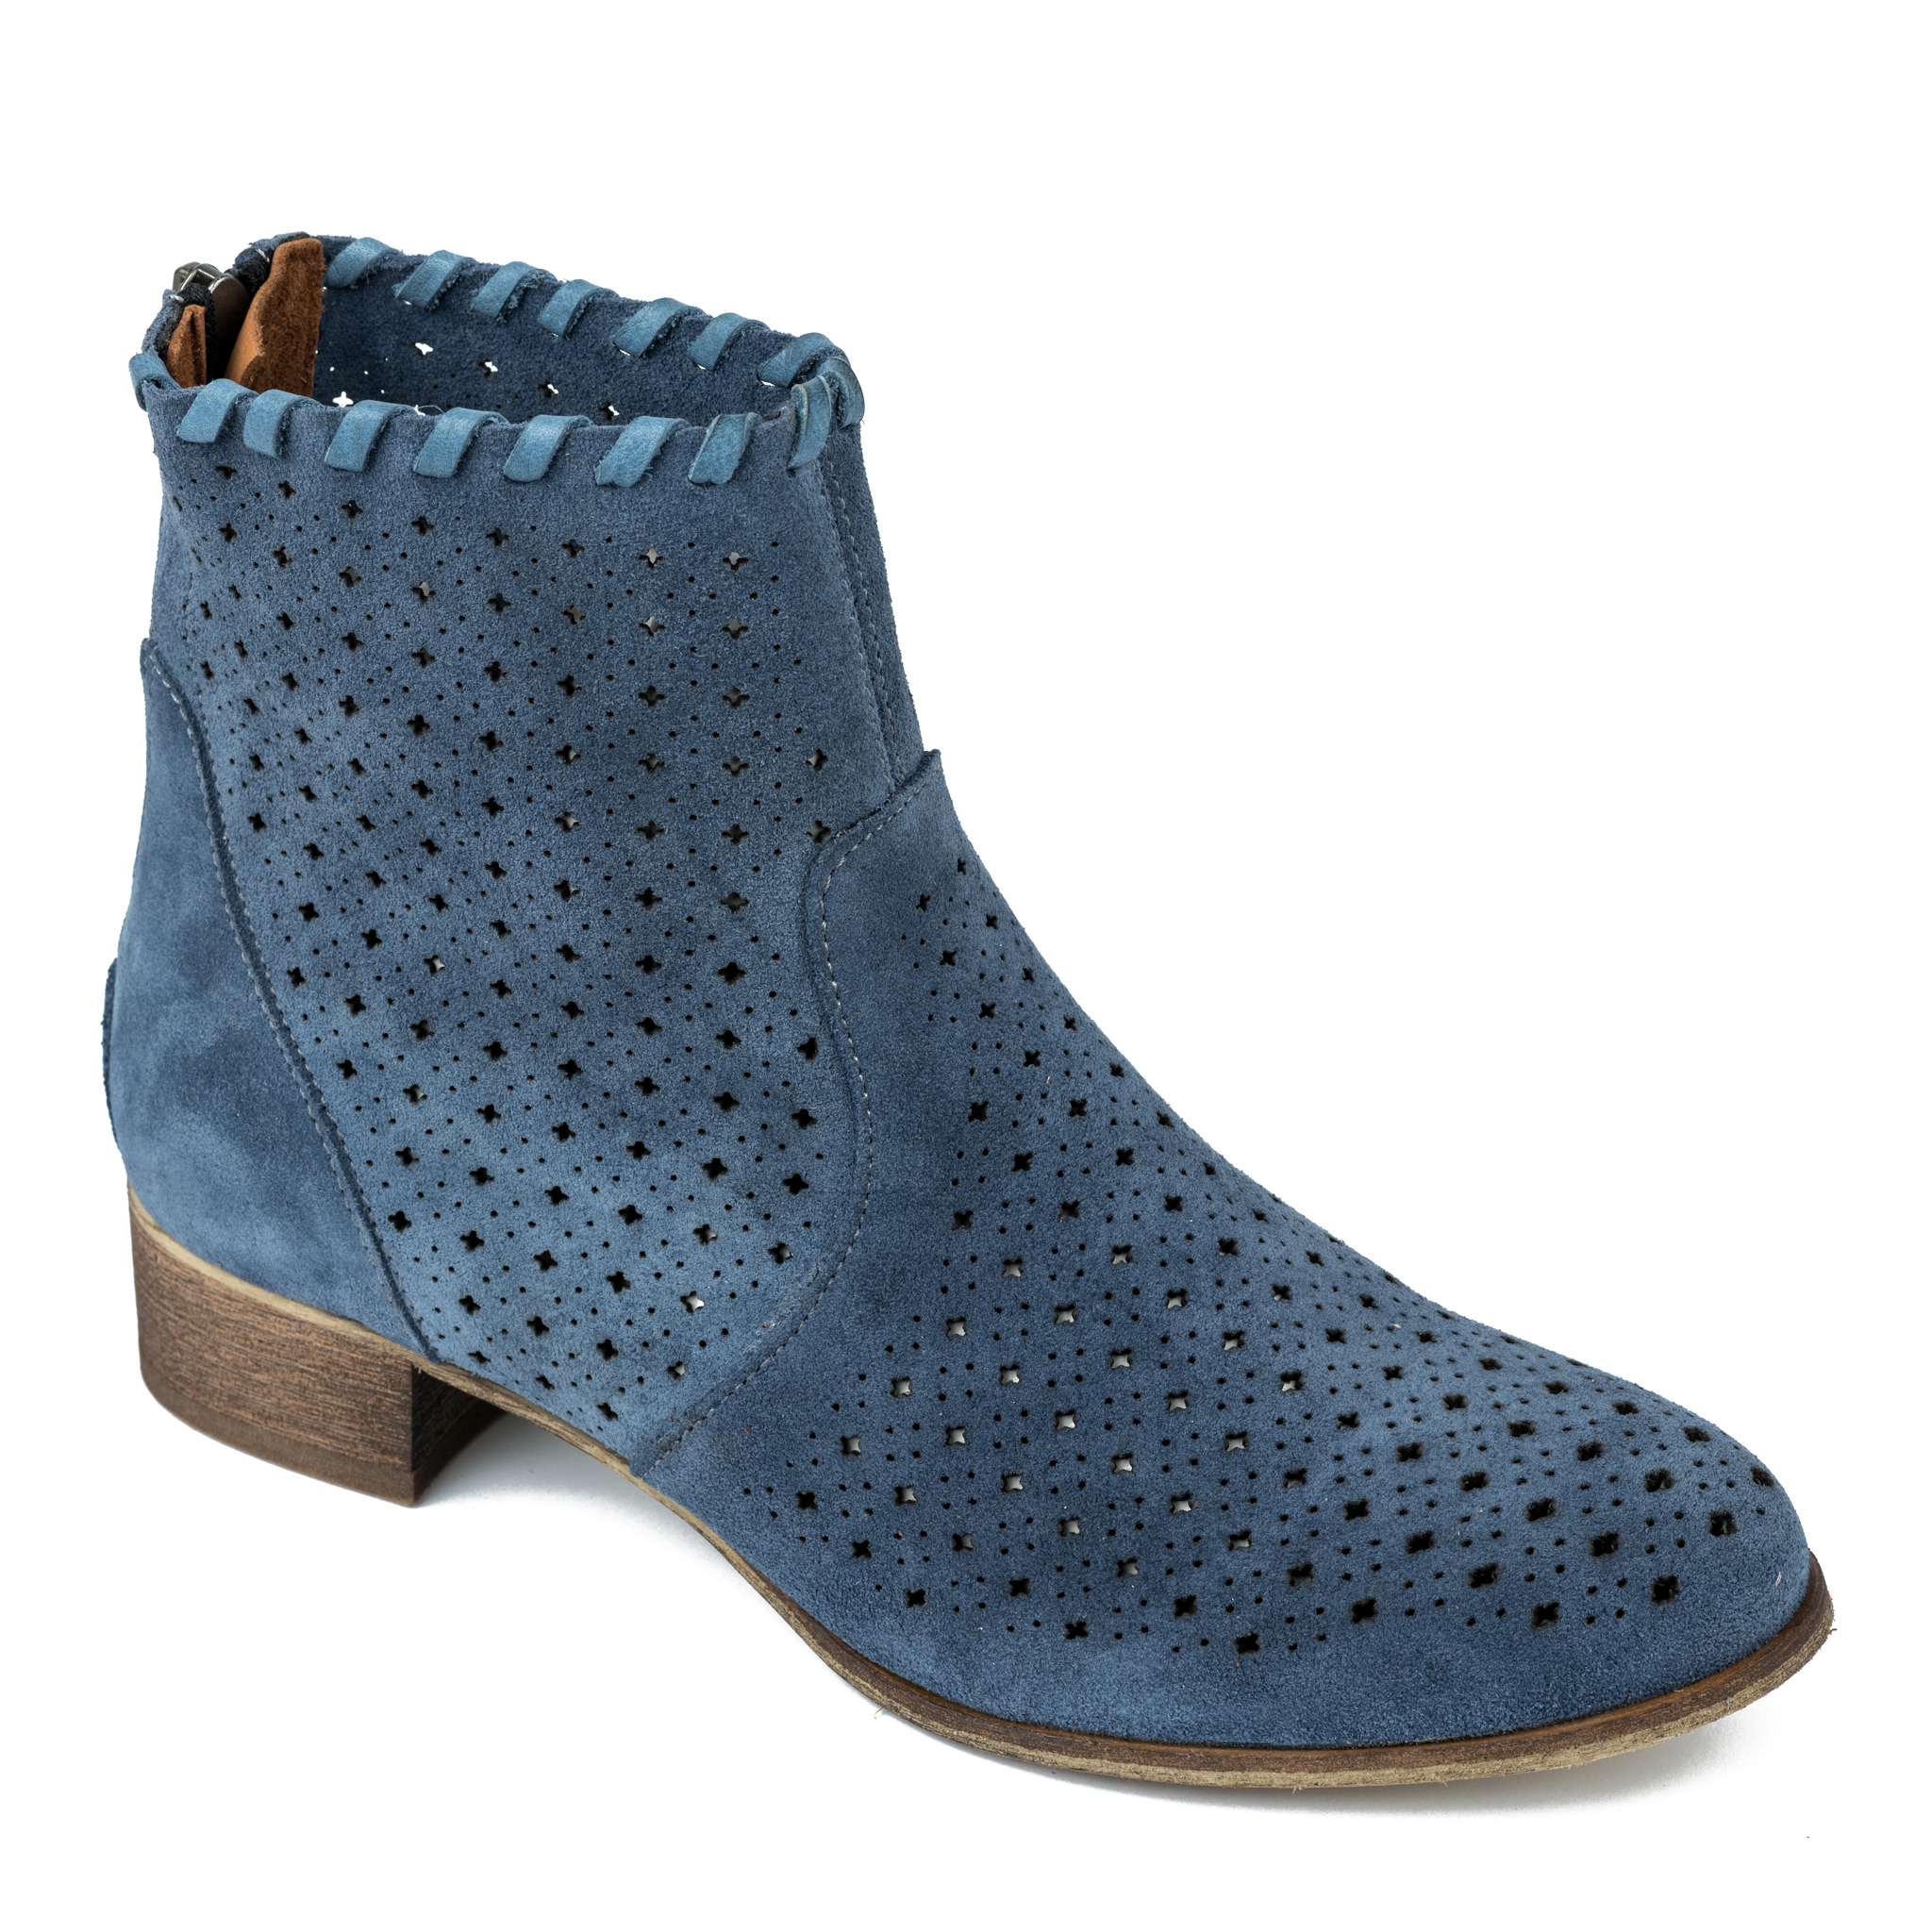 Summer boots A184 - BLUE